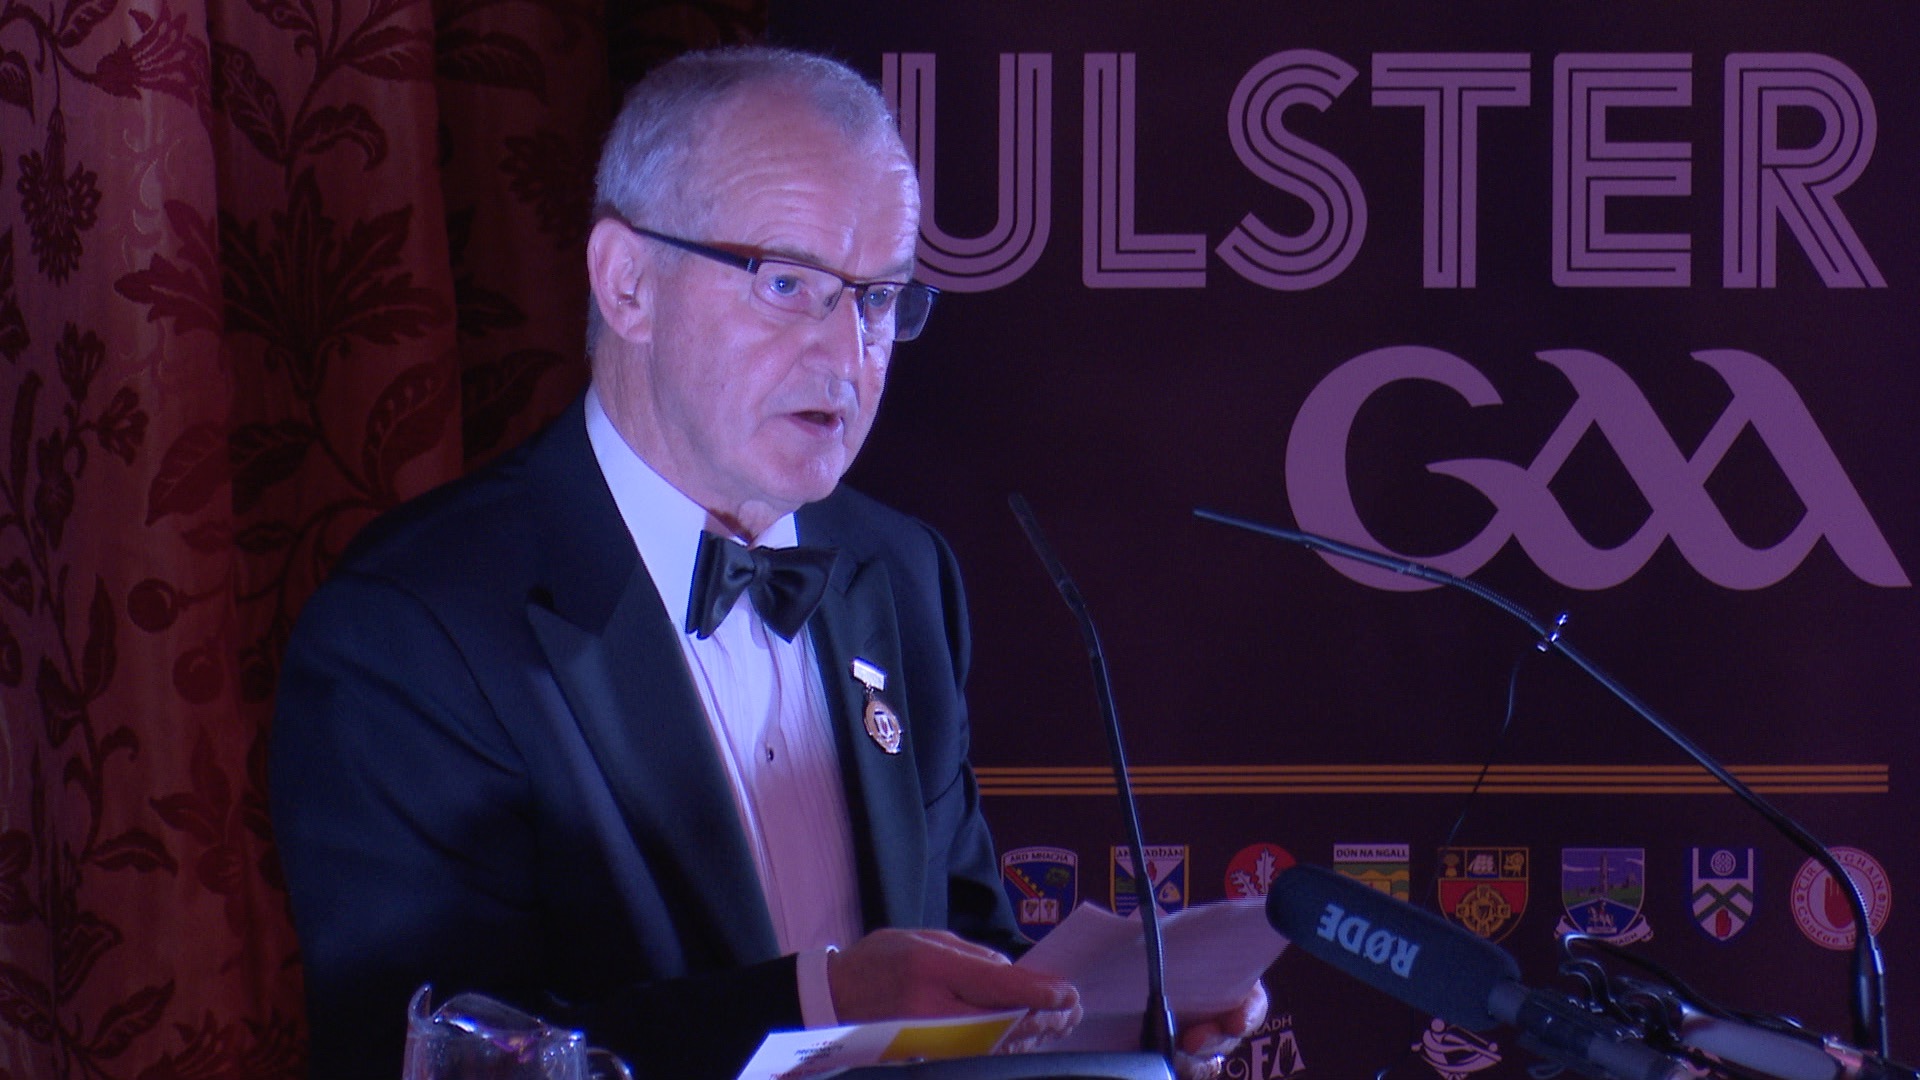 Ulster GAA President’s Awards 2016